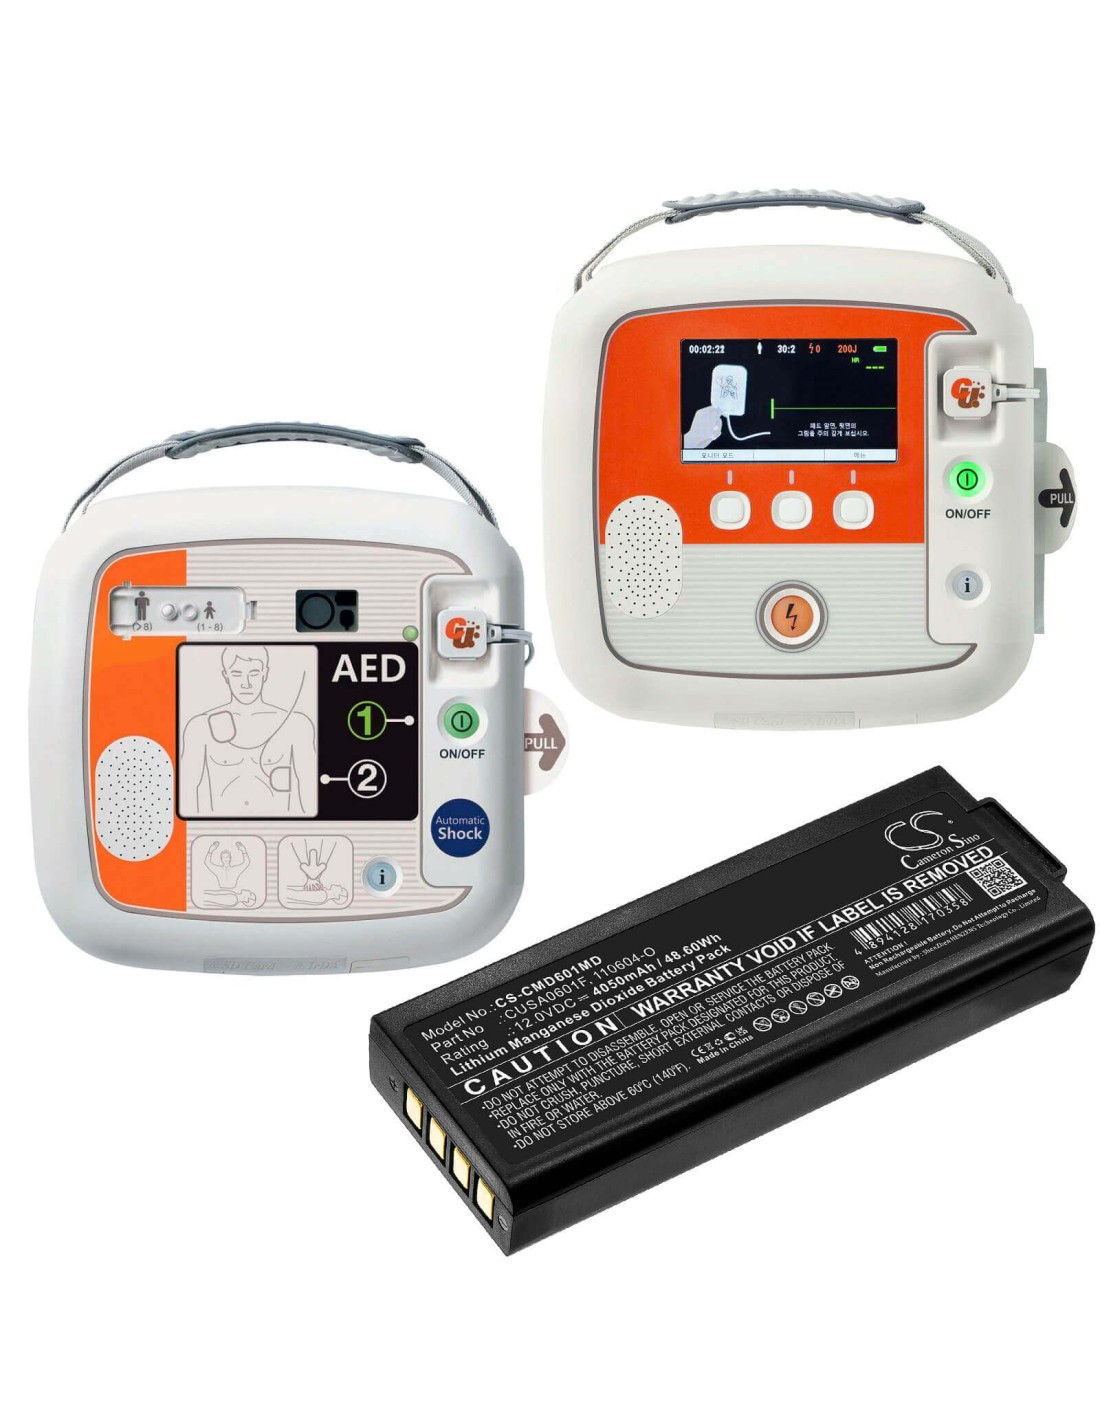 12.0V, Li-MnO2, 4050mAh, Battery fits Cu Medical, Defibrillator I-pad, Ipad Sp1, I-pad Sp1 Defibrillator, 48.60Wh